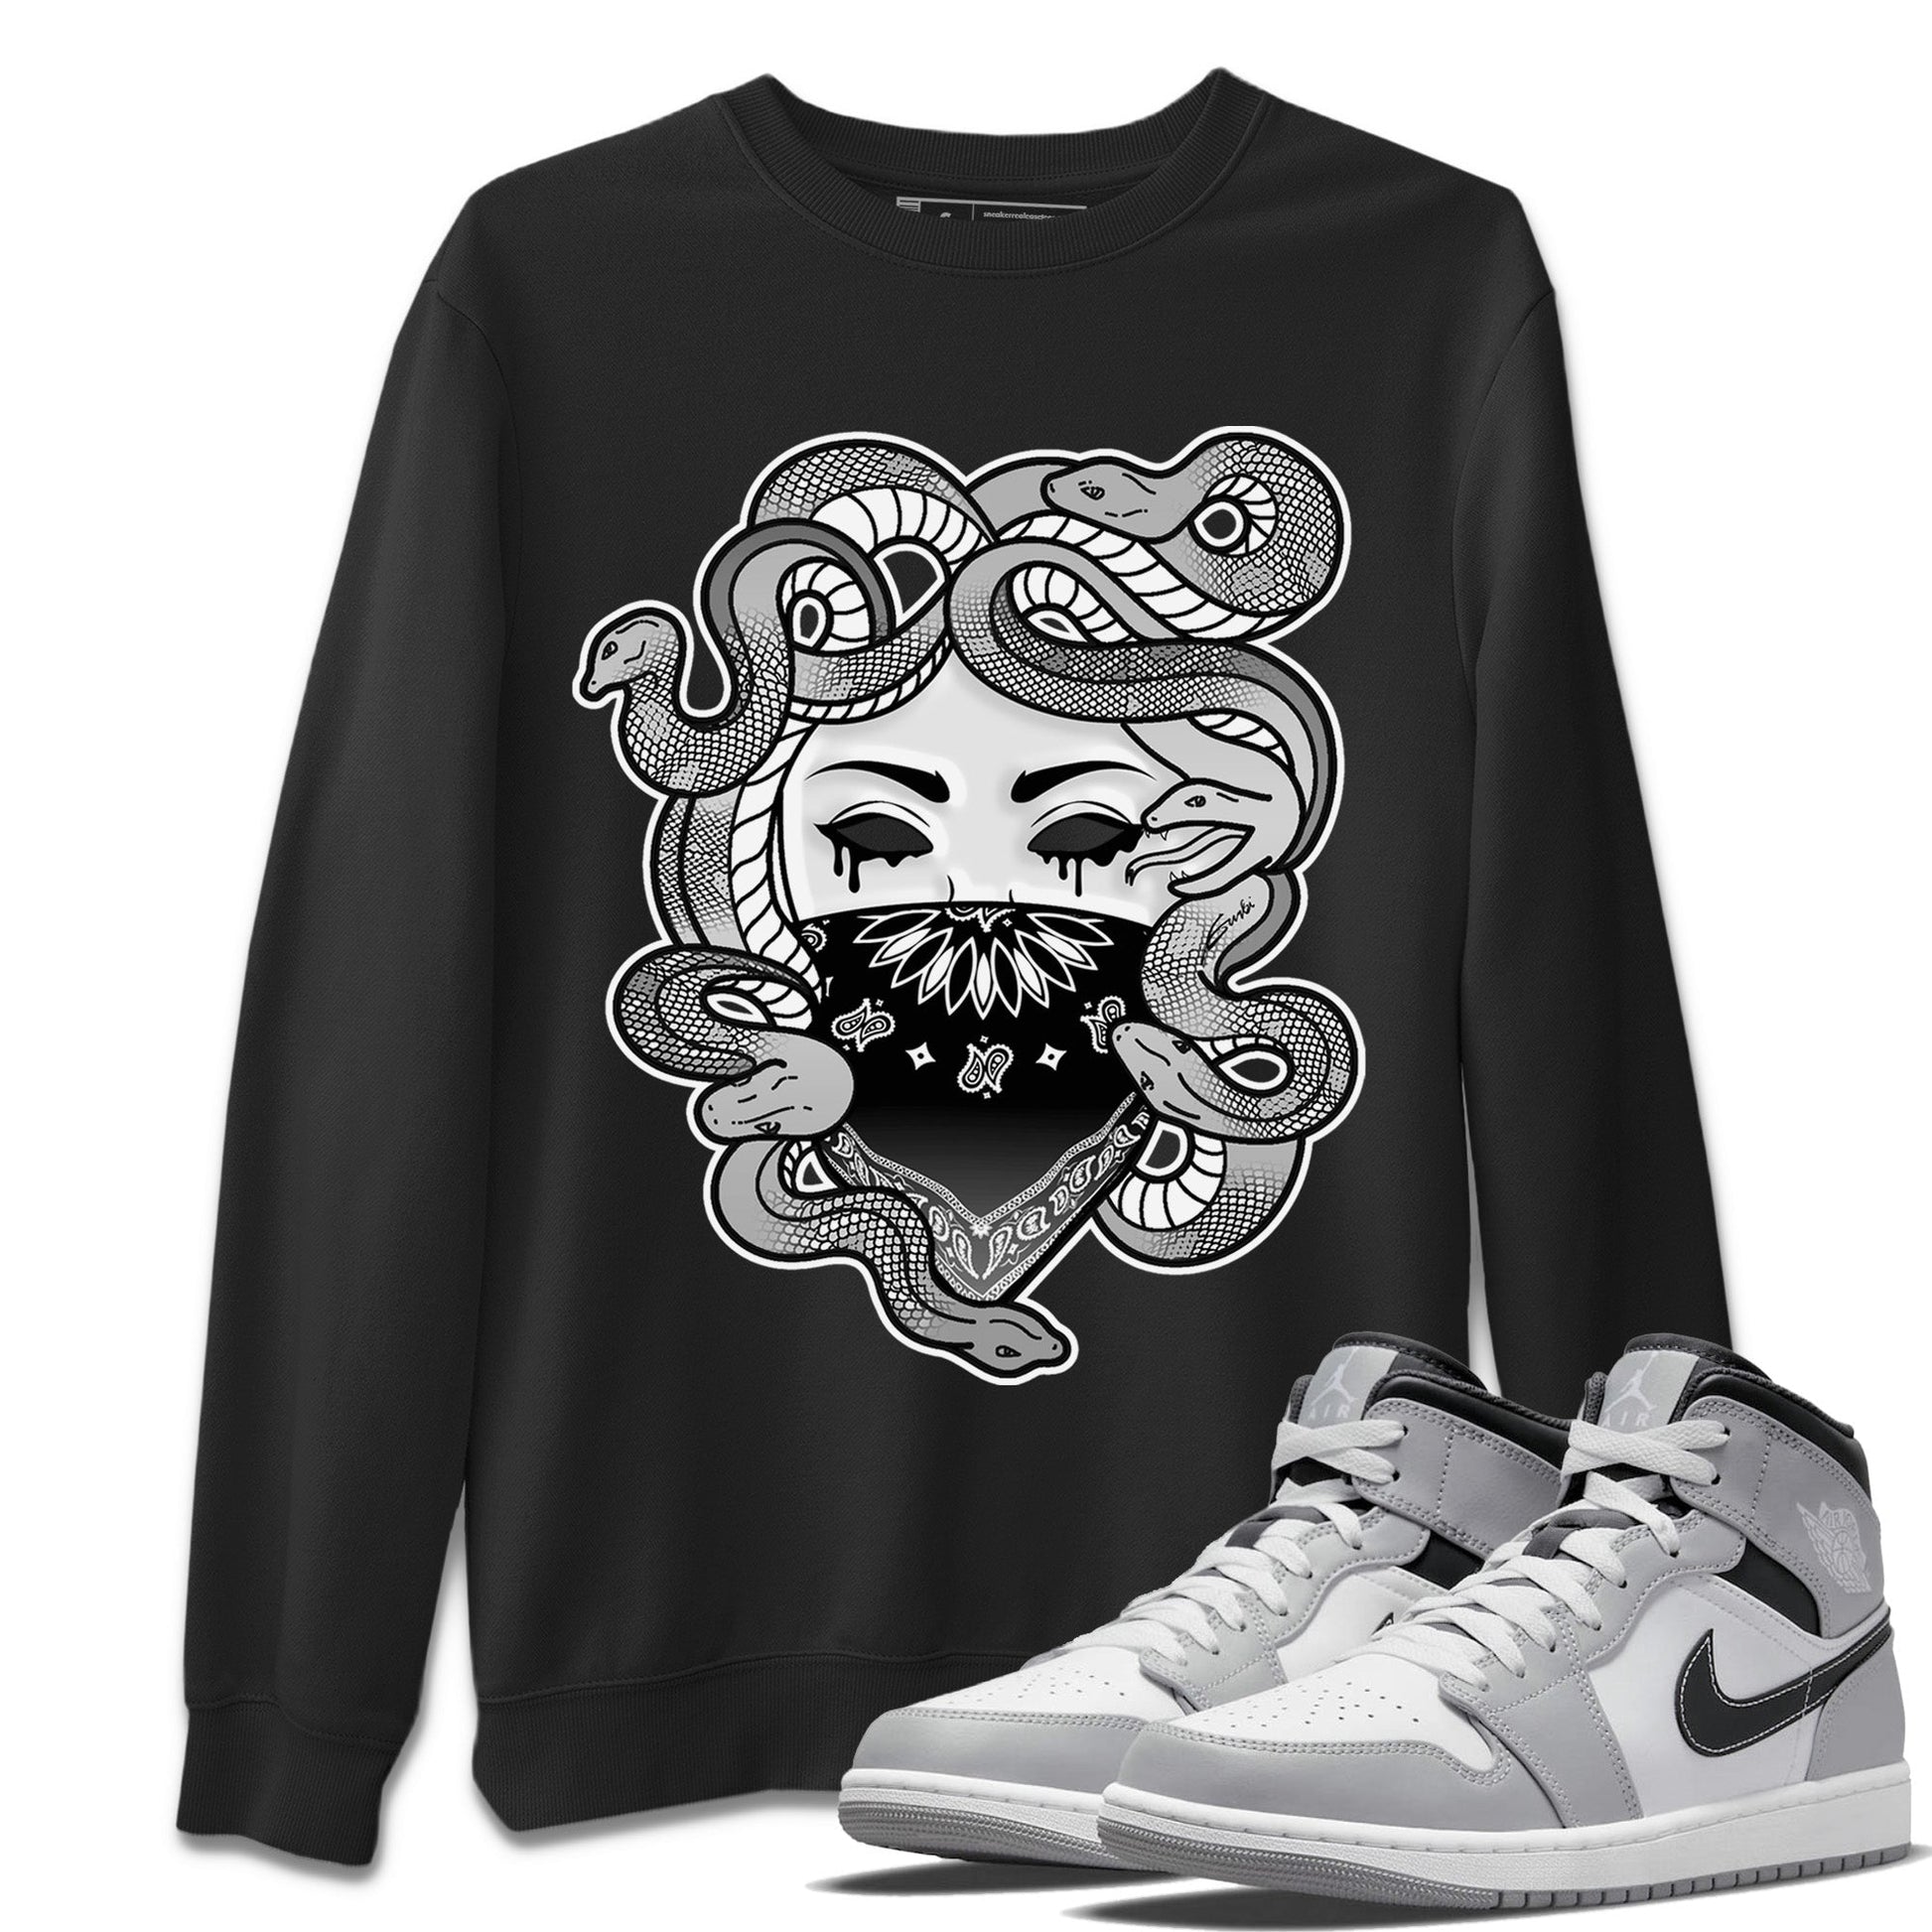 Jordan 1 Light Smoke Grey Sneaker Match Tees Medusa Sneaker Tees Jordan 1 Light Smoke Grey Sneaker Release Tees Unisex Shirts